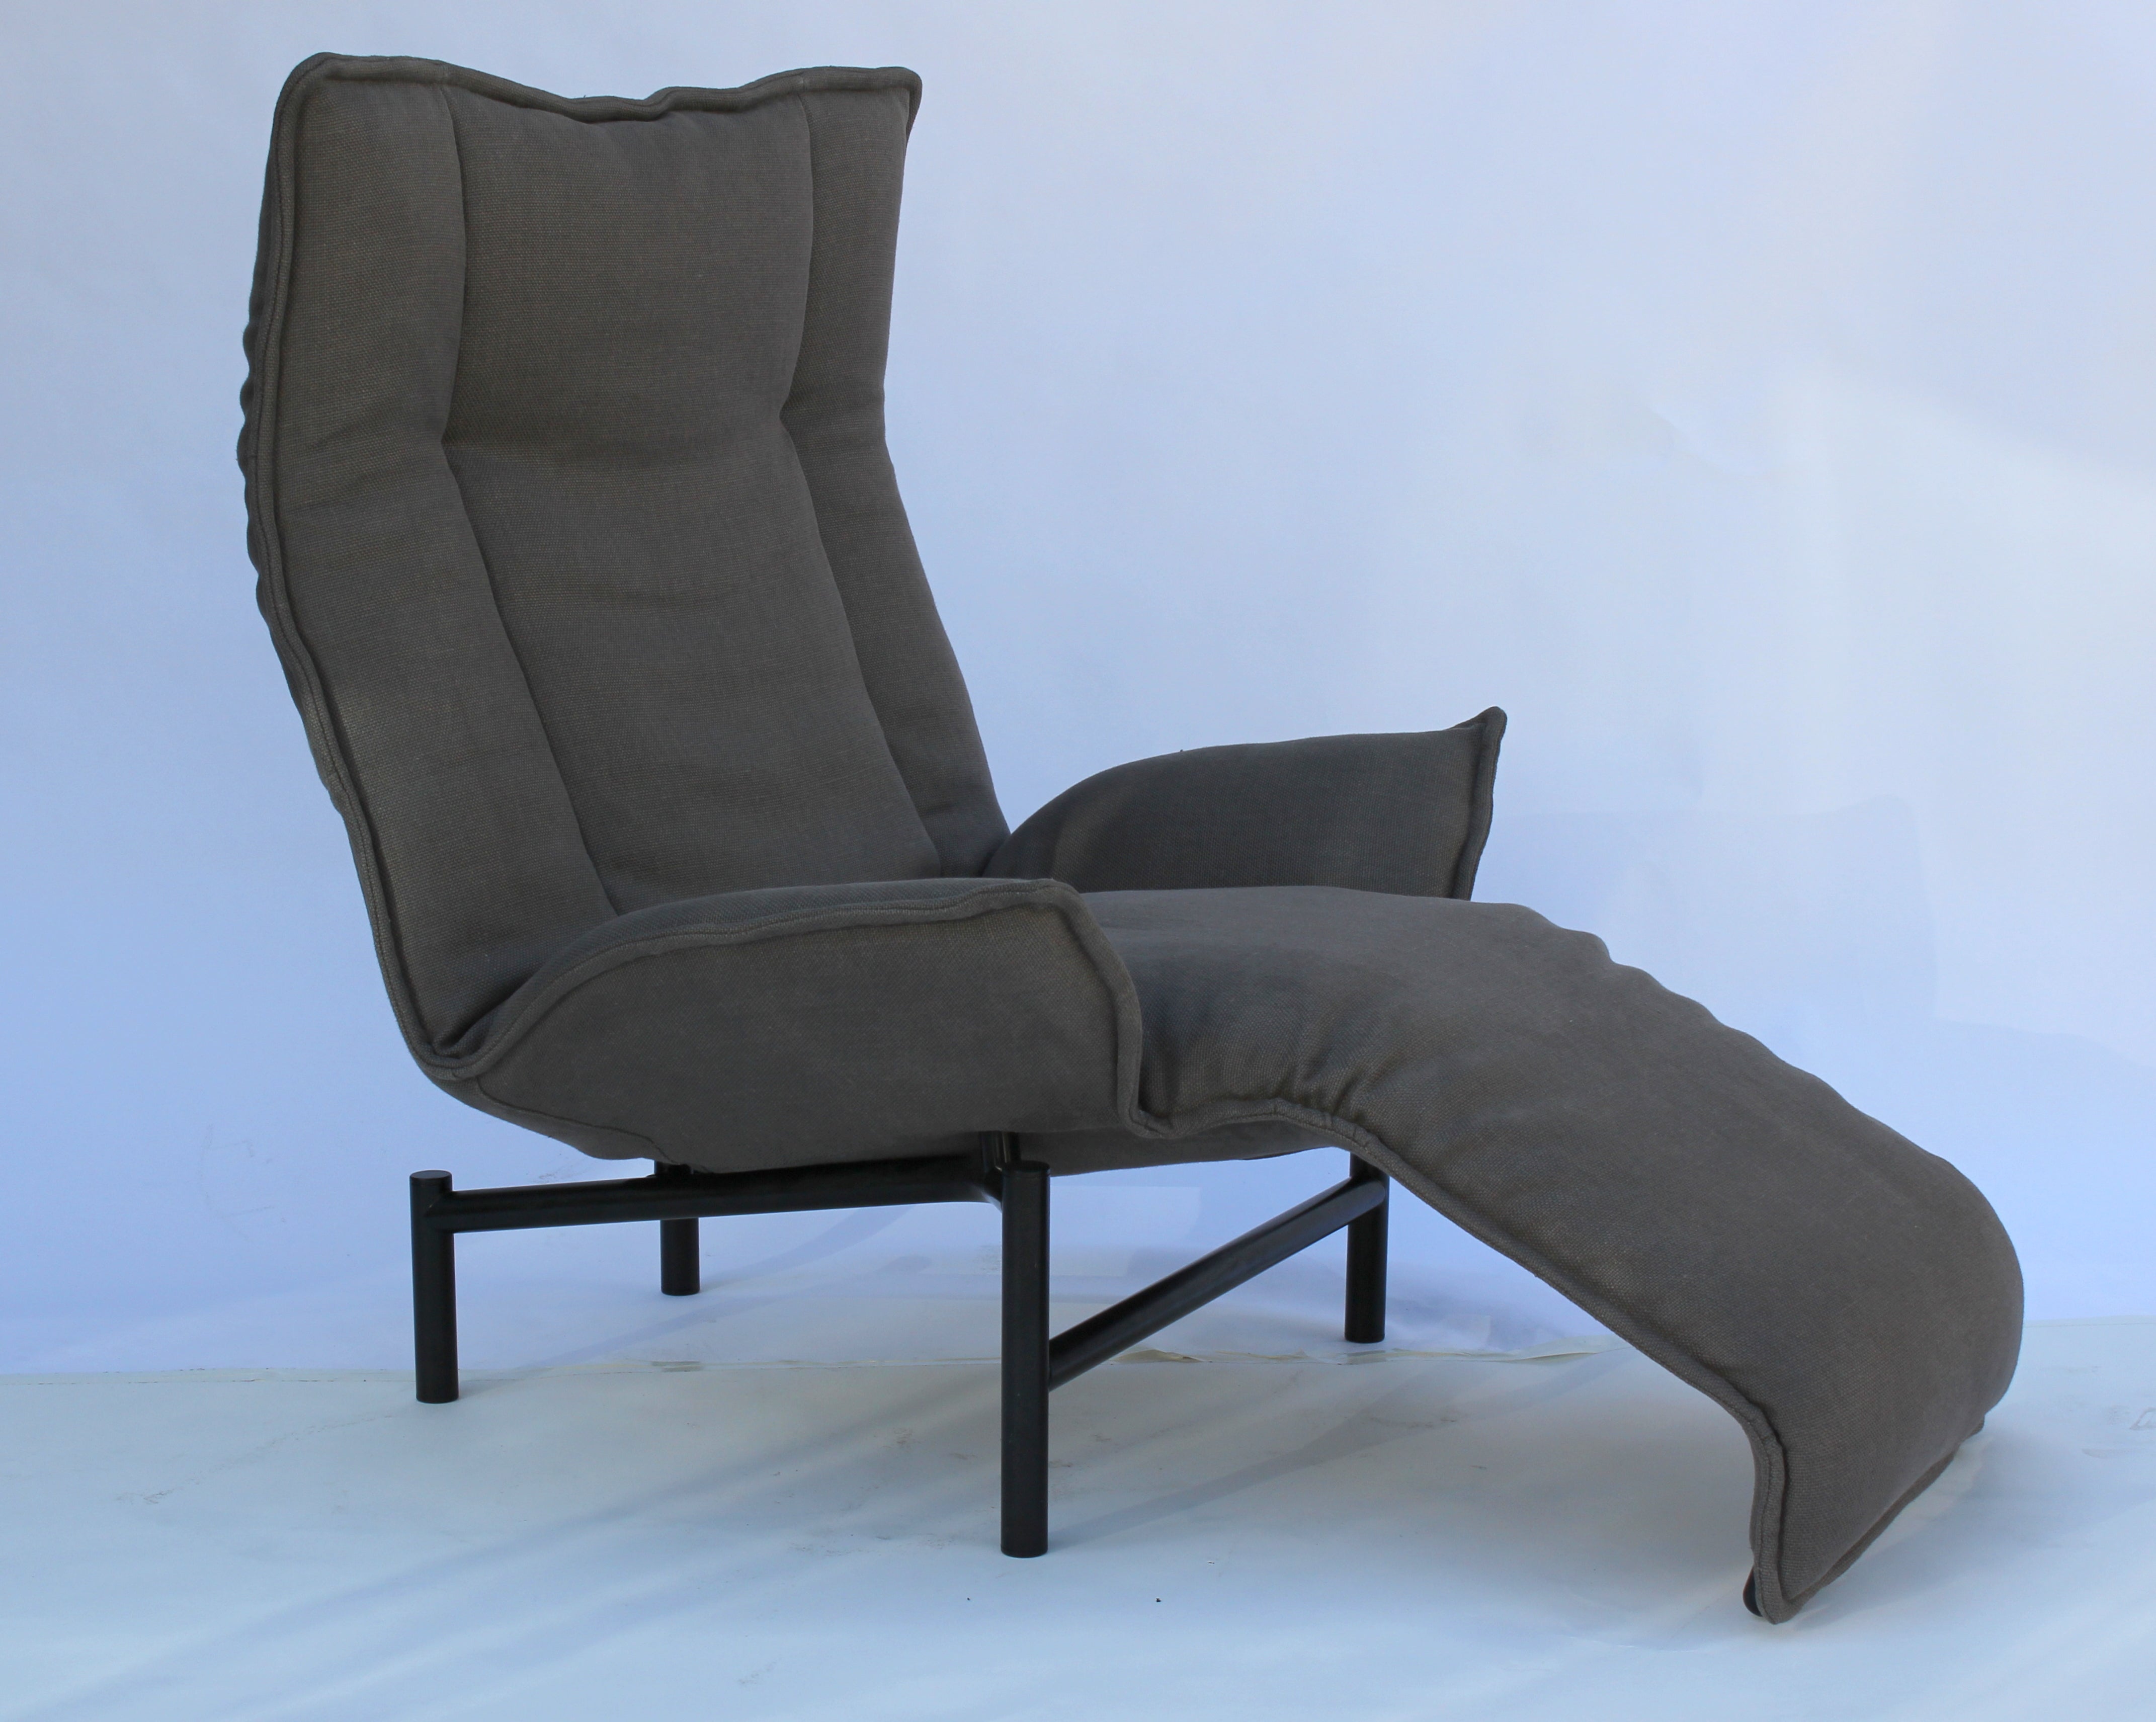 Vico Magistretti for Cassina  "Veranda" adjustable armchair